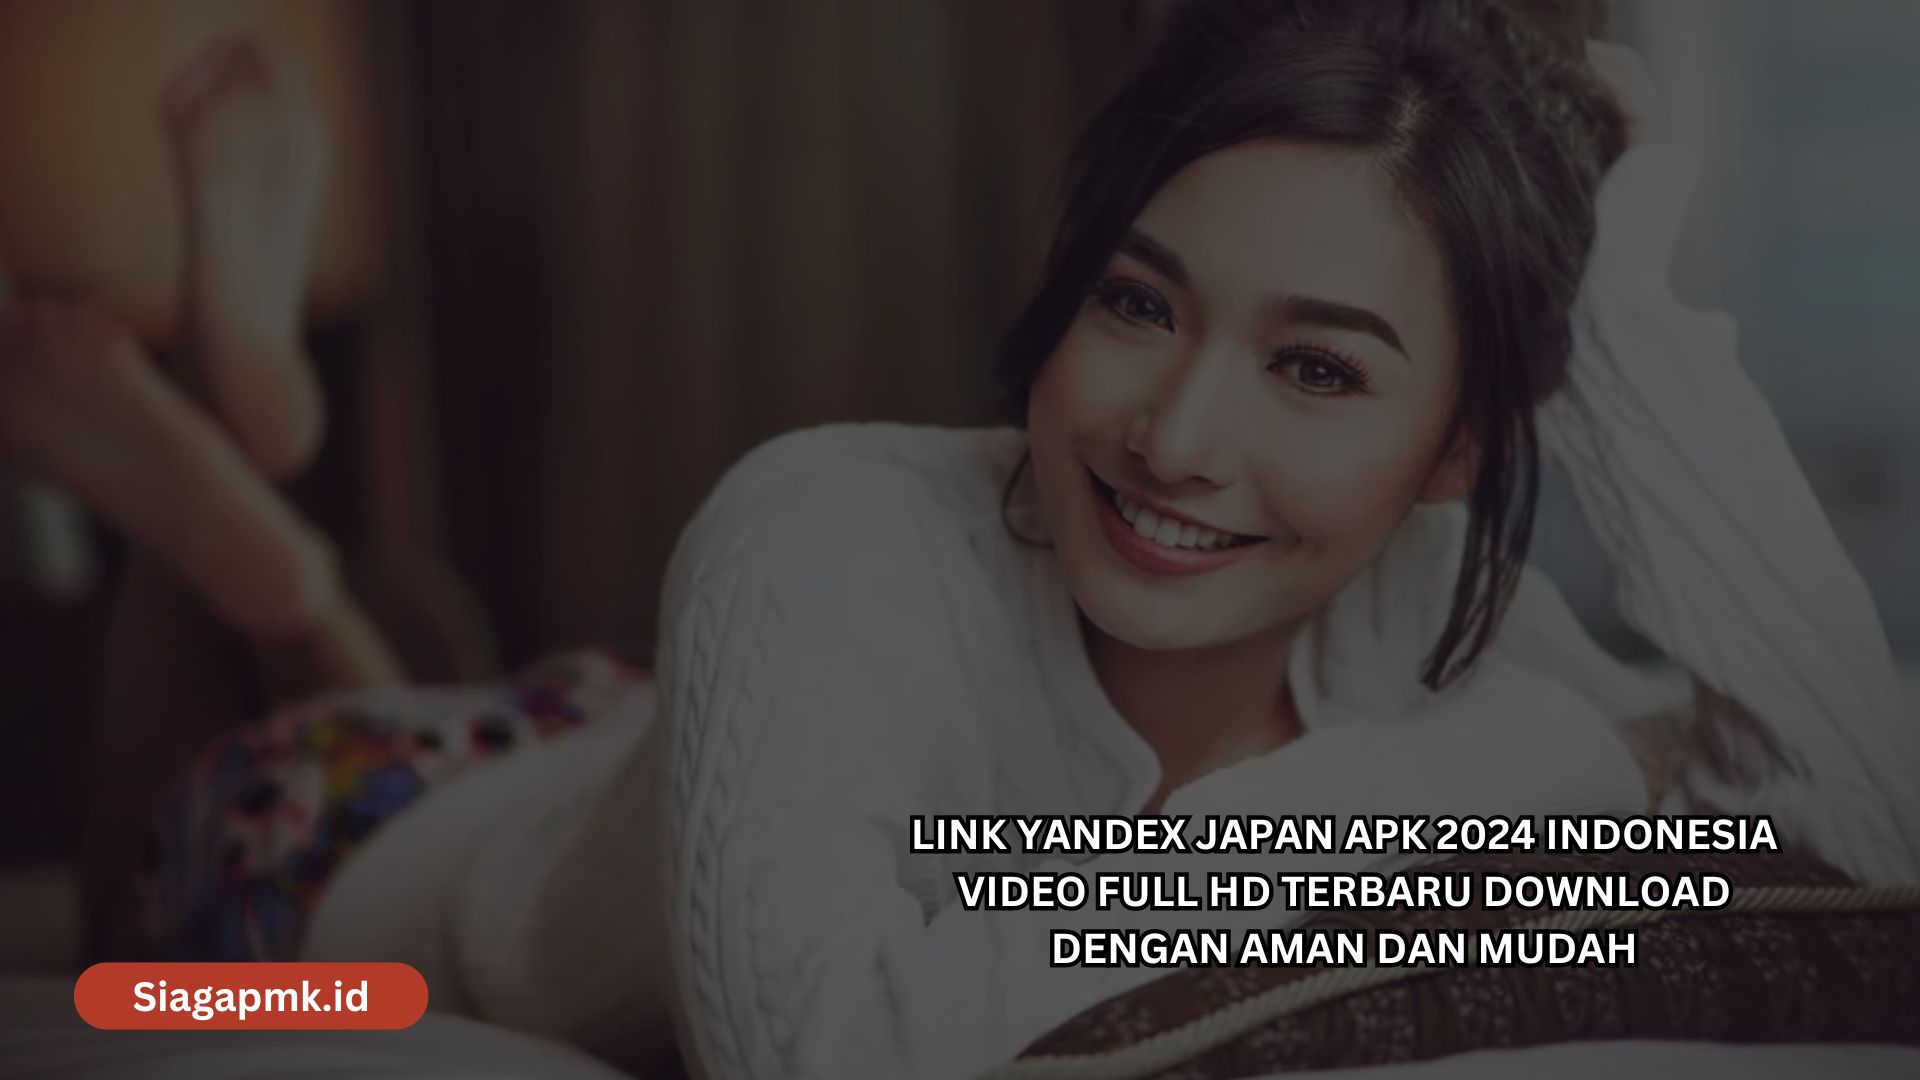 Link Yandex Japan Apk 2024 Indonesia Video Full HD Terbaru Download dengan Aman dan Mudah